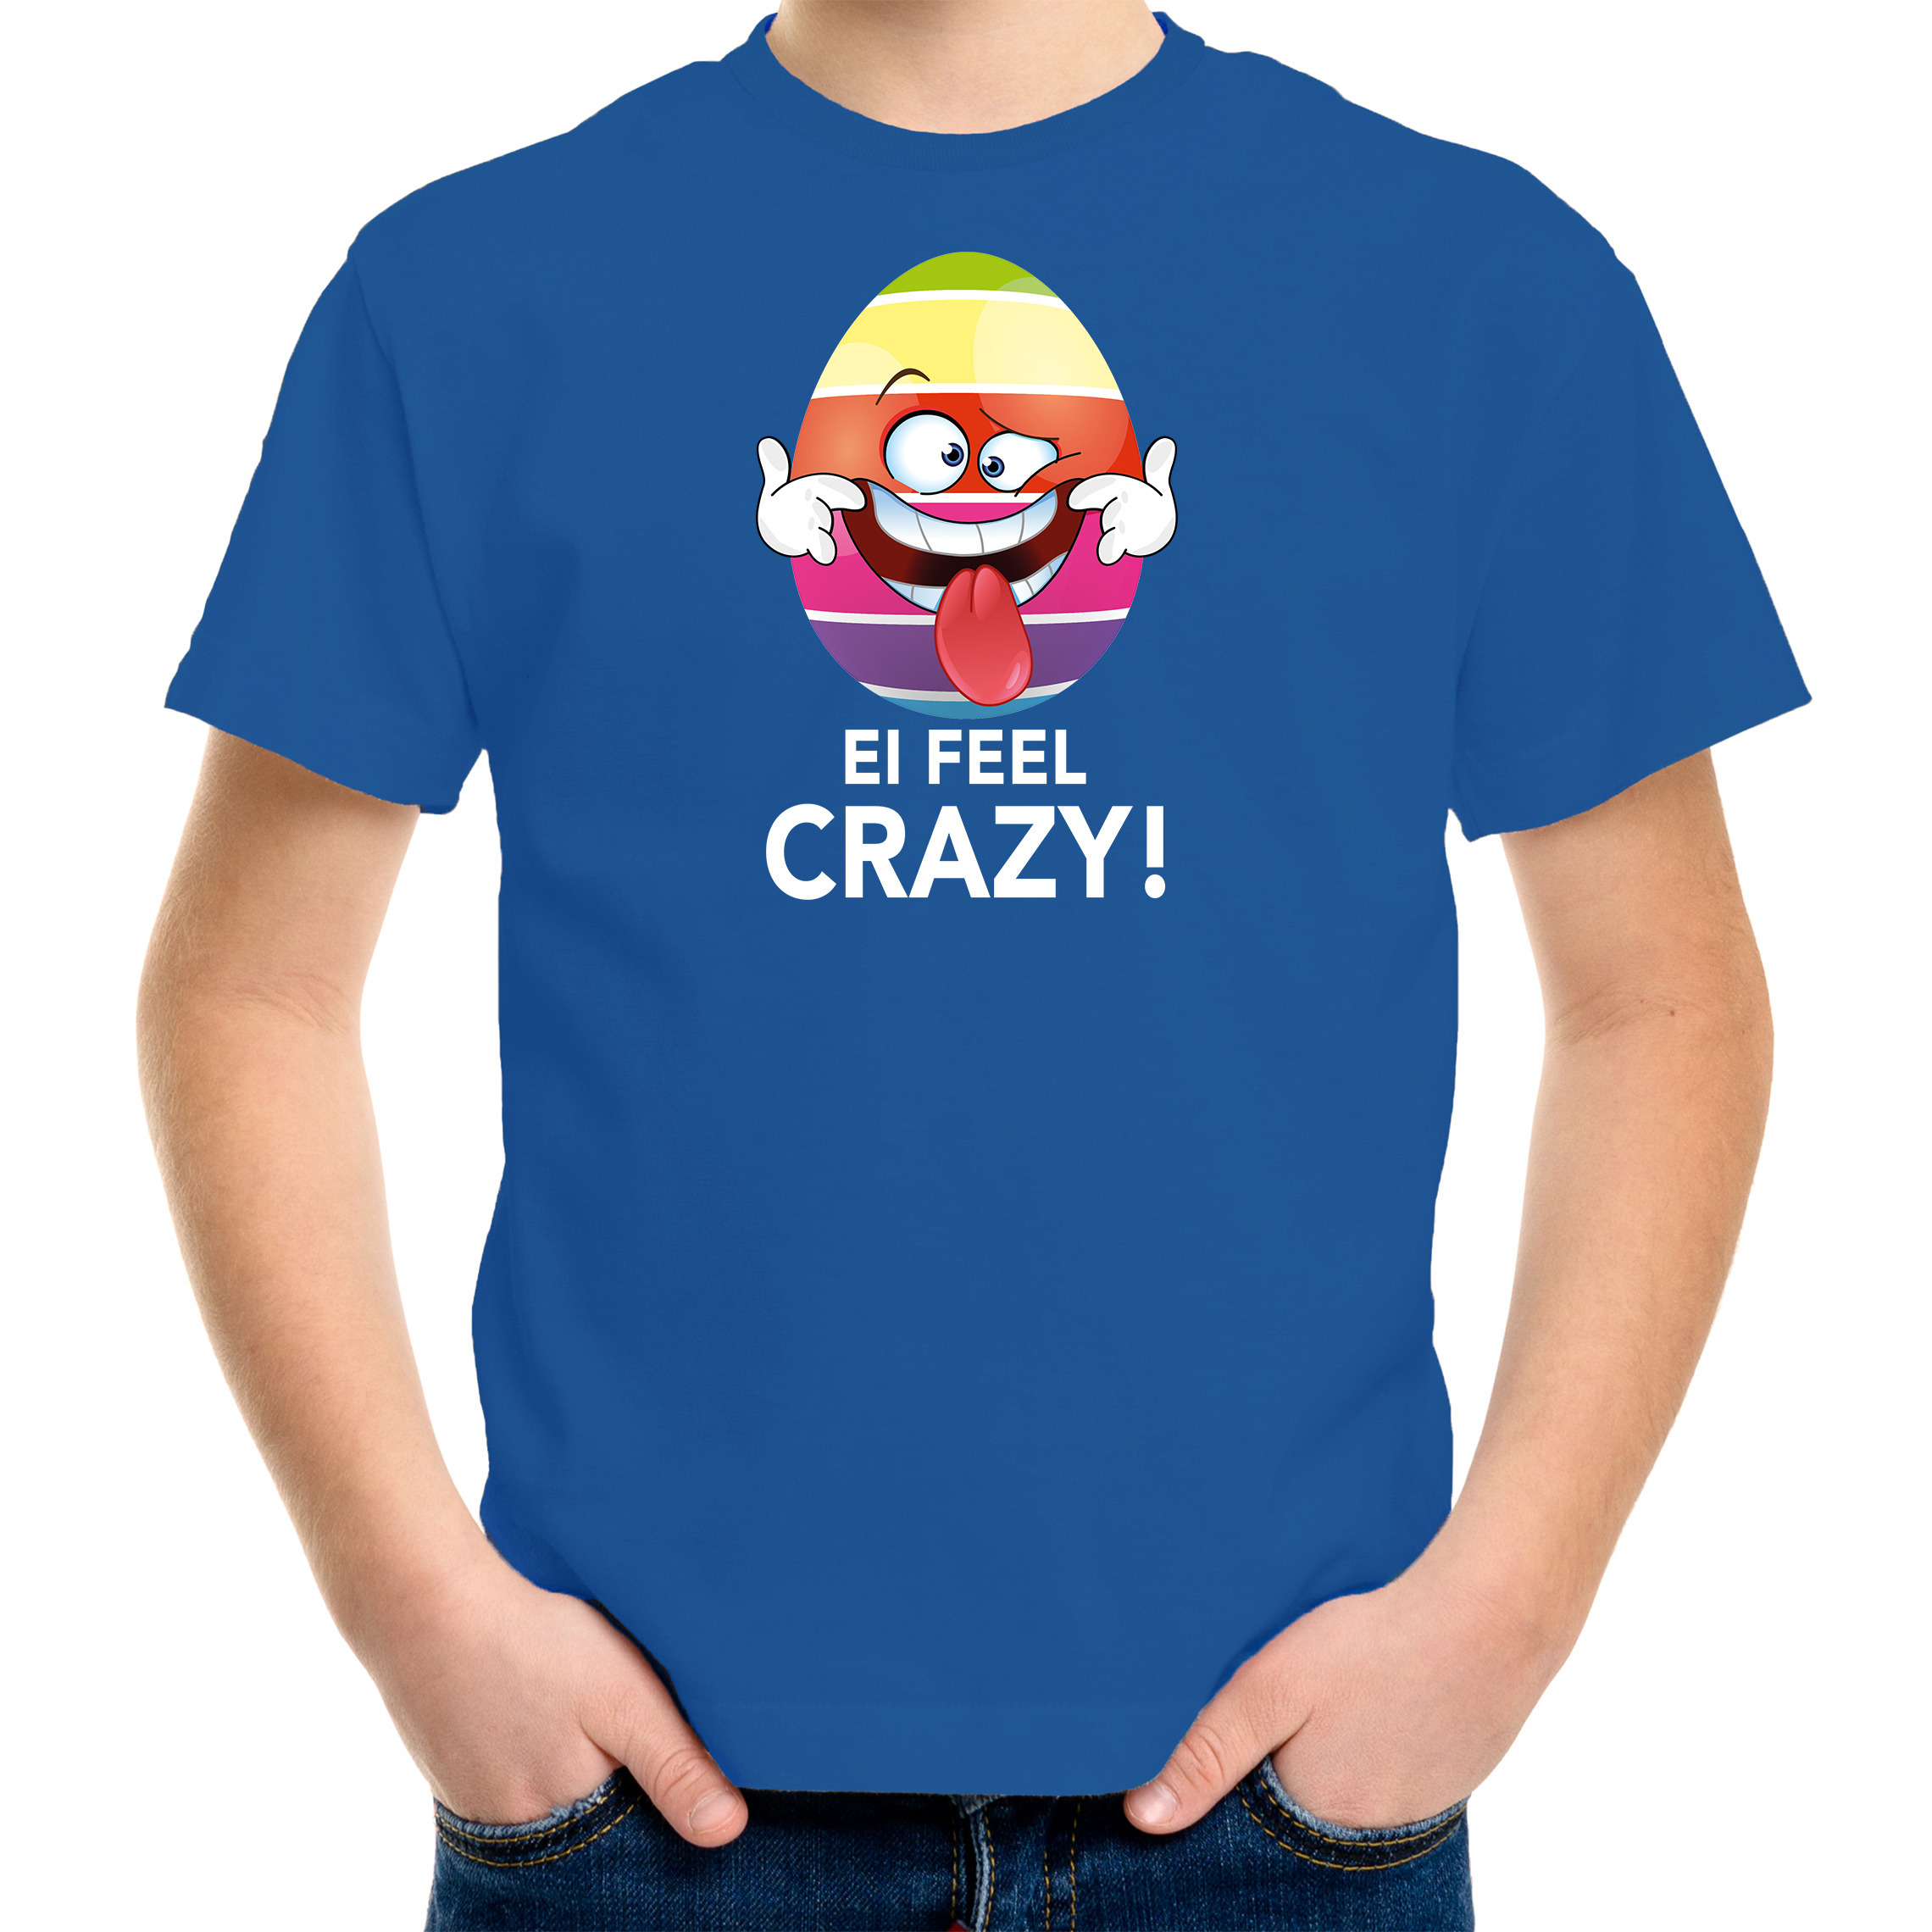 Vrolijk Paasei ei feel crazy t-shirt blauw voor kinderen Paas kleding-outfit